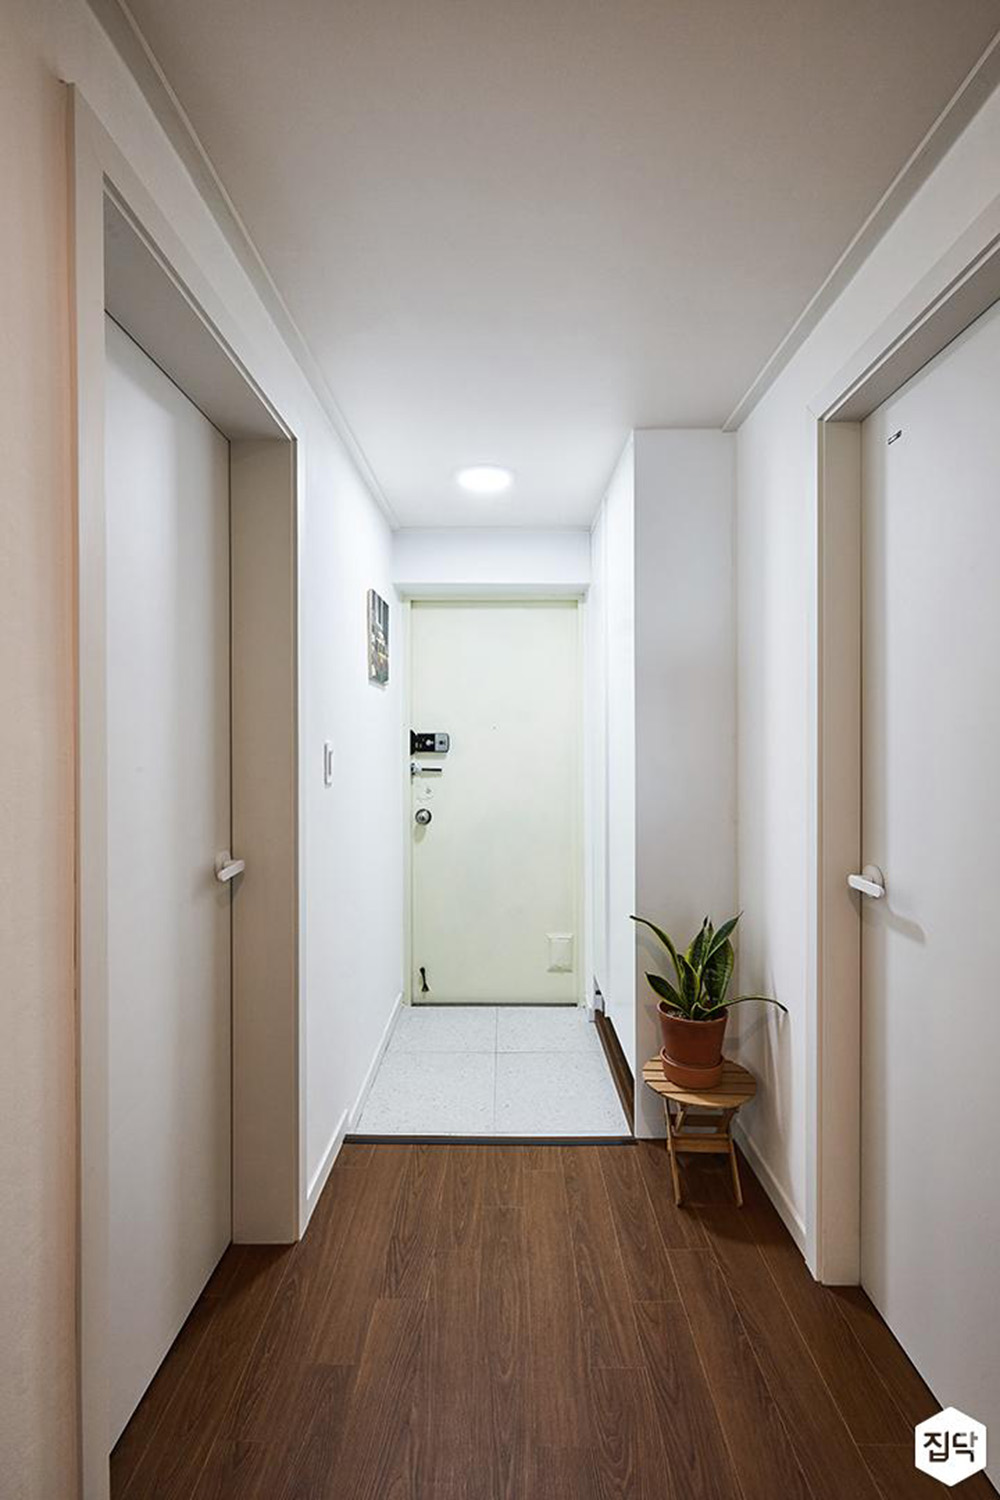 Chúng tôi hiểu rõ những yêu cầu và thách thức khi thiết kế nội thất cho căn hộ chung cư diện tích nhỏ. Với phương pháp tiếp cận độc đáo của mình, chúng tôi giúp bạn tối ưu hóa không gian sống, cùng với những giải pháp thiết kế sang trọng, hiện đại để tạo ra một không gian sống tuyệt vời cho bạn.